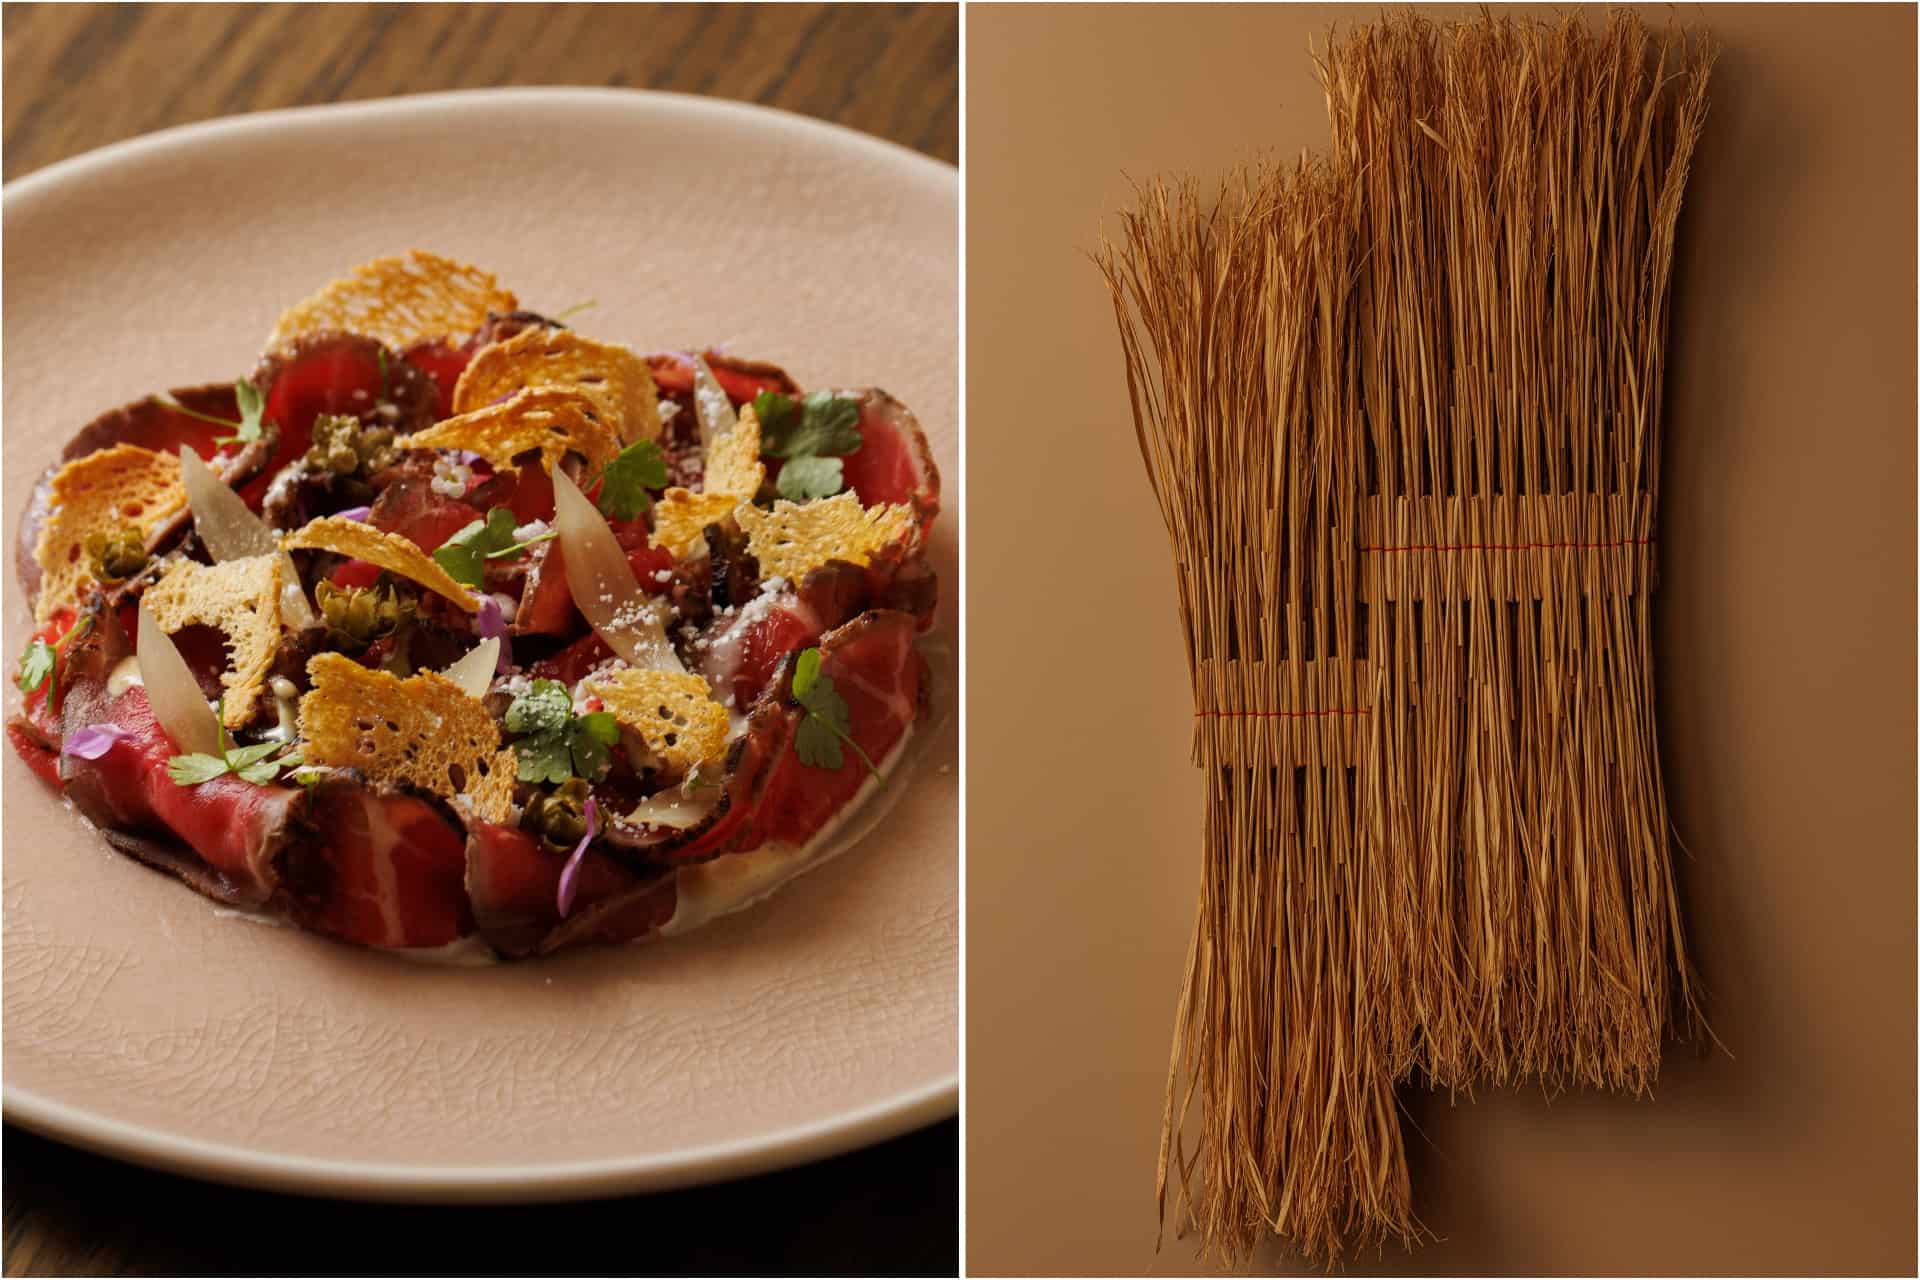 ‘Refined risotto’ restaurant all’onda to open in Fitzrovia